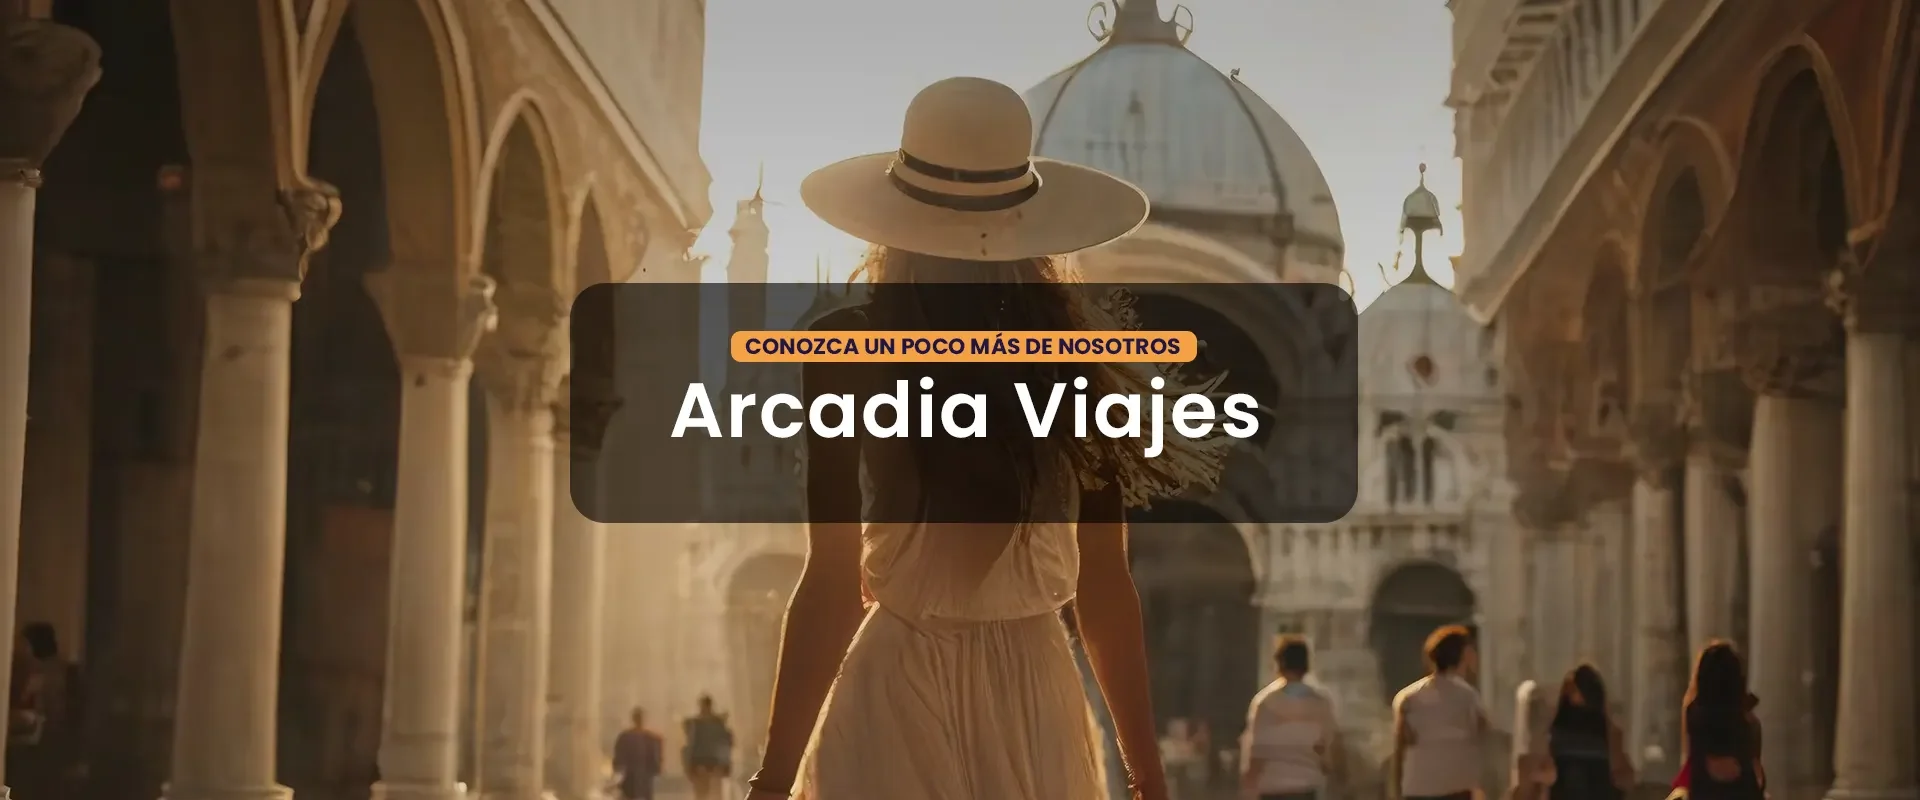 Nosotros - Arcadia Viajes